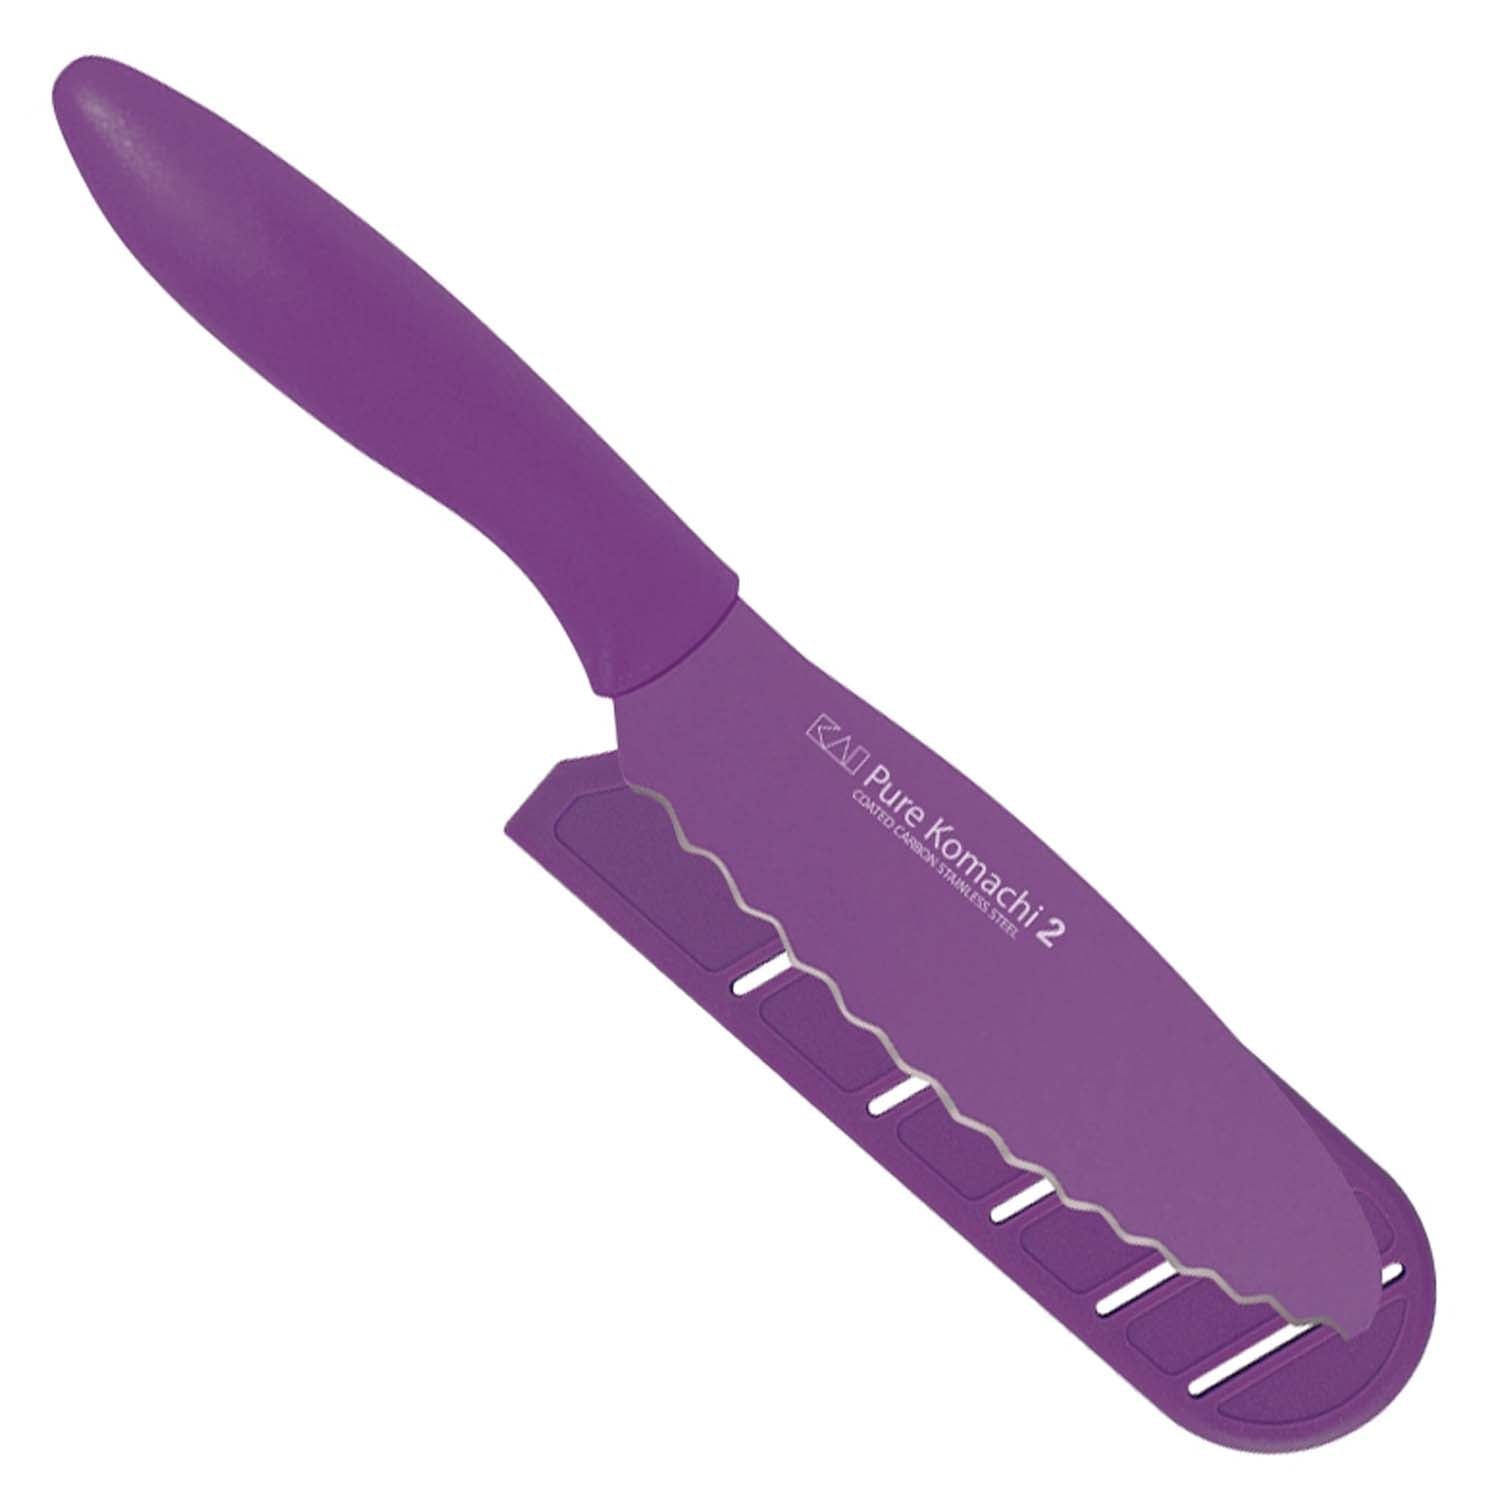 Pure Komachi 2 Sandwich Knife, Purple